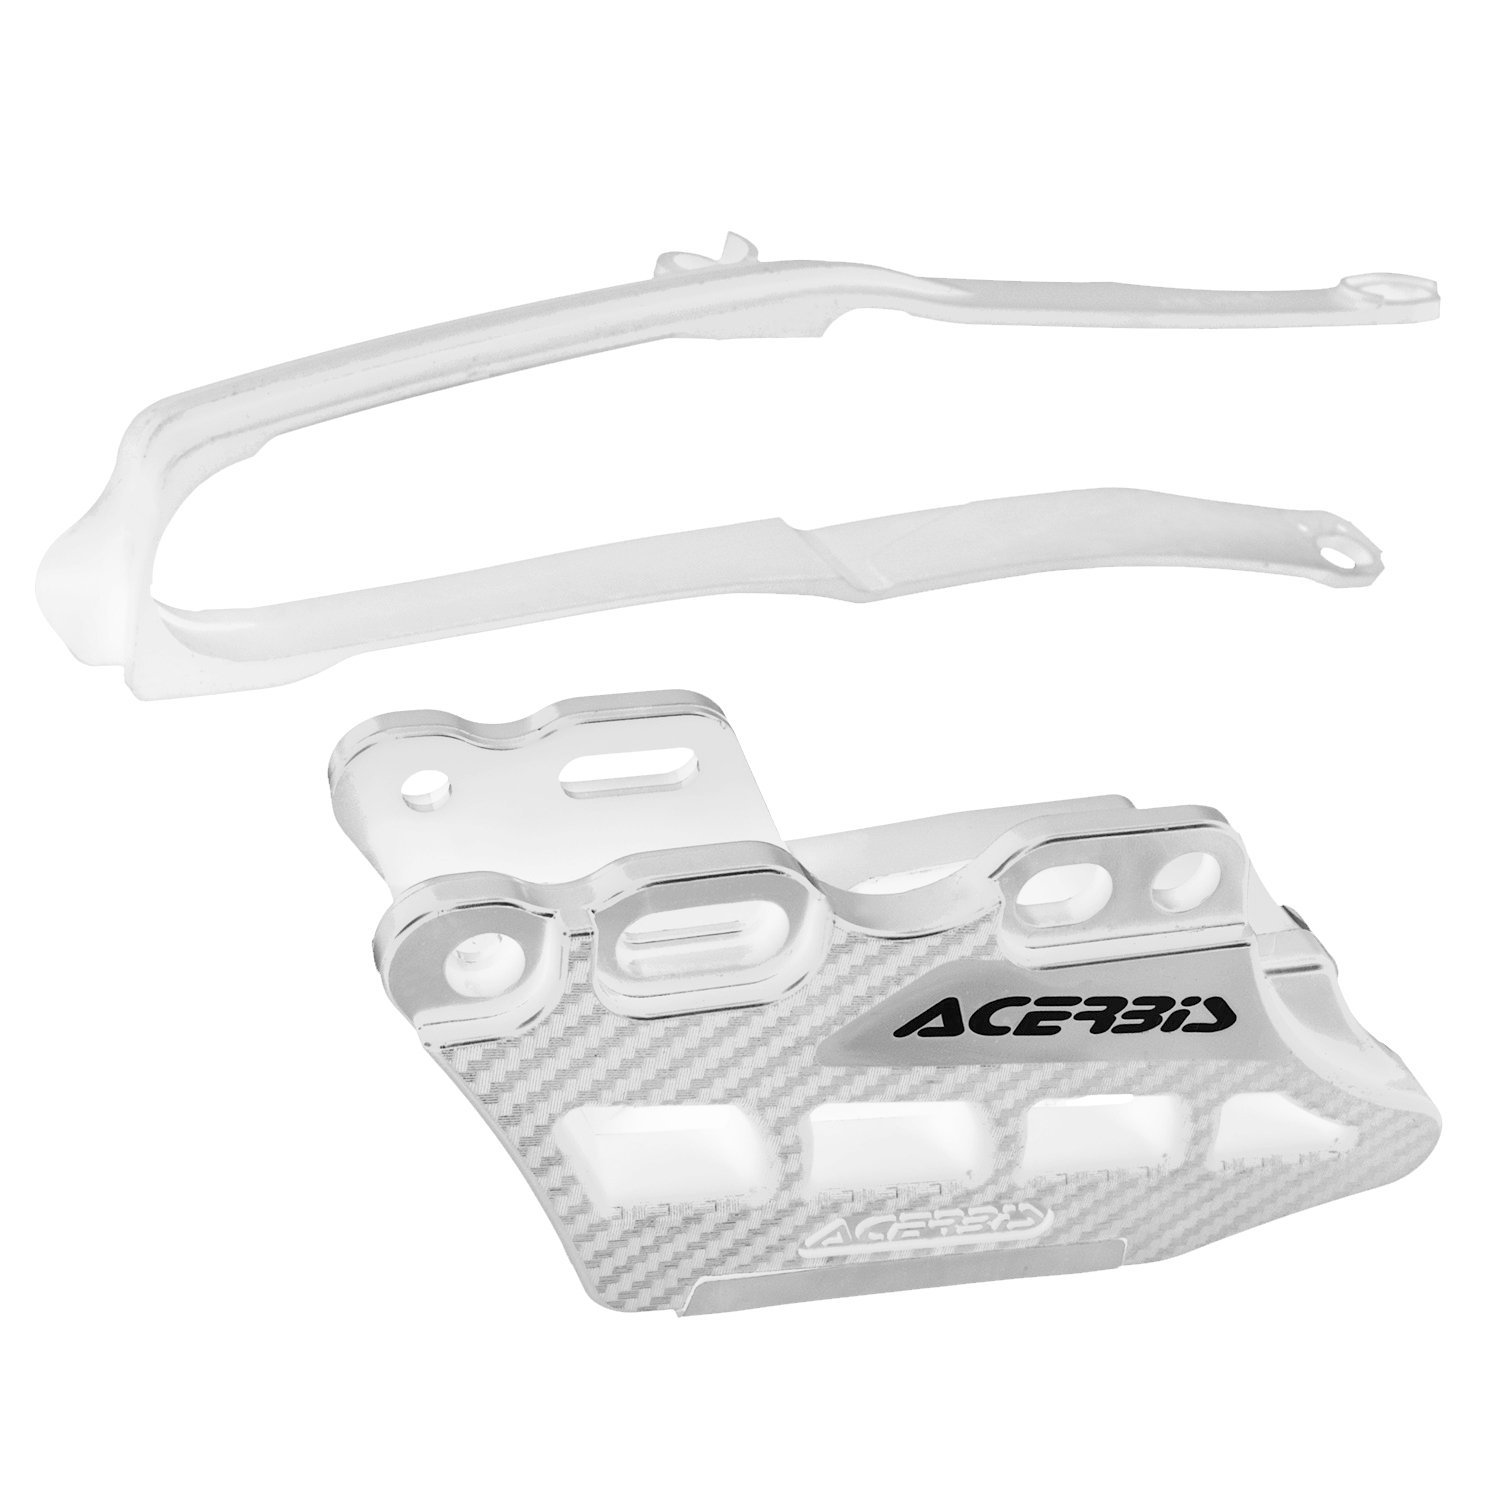 Acerbis Kit Cruna Catena + Passacatena  Honda CRF 250/450, Bianco